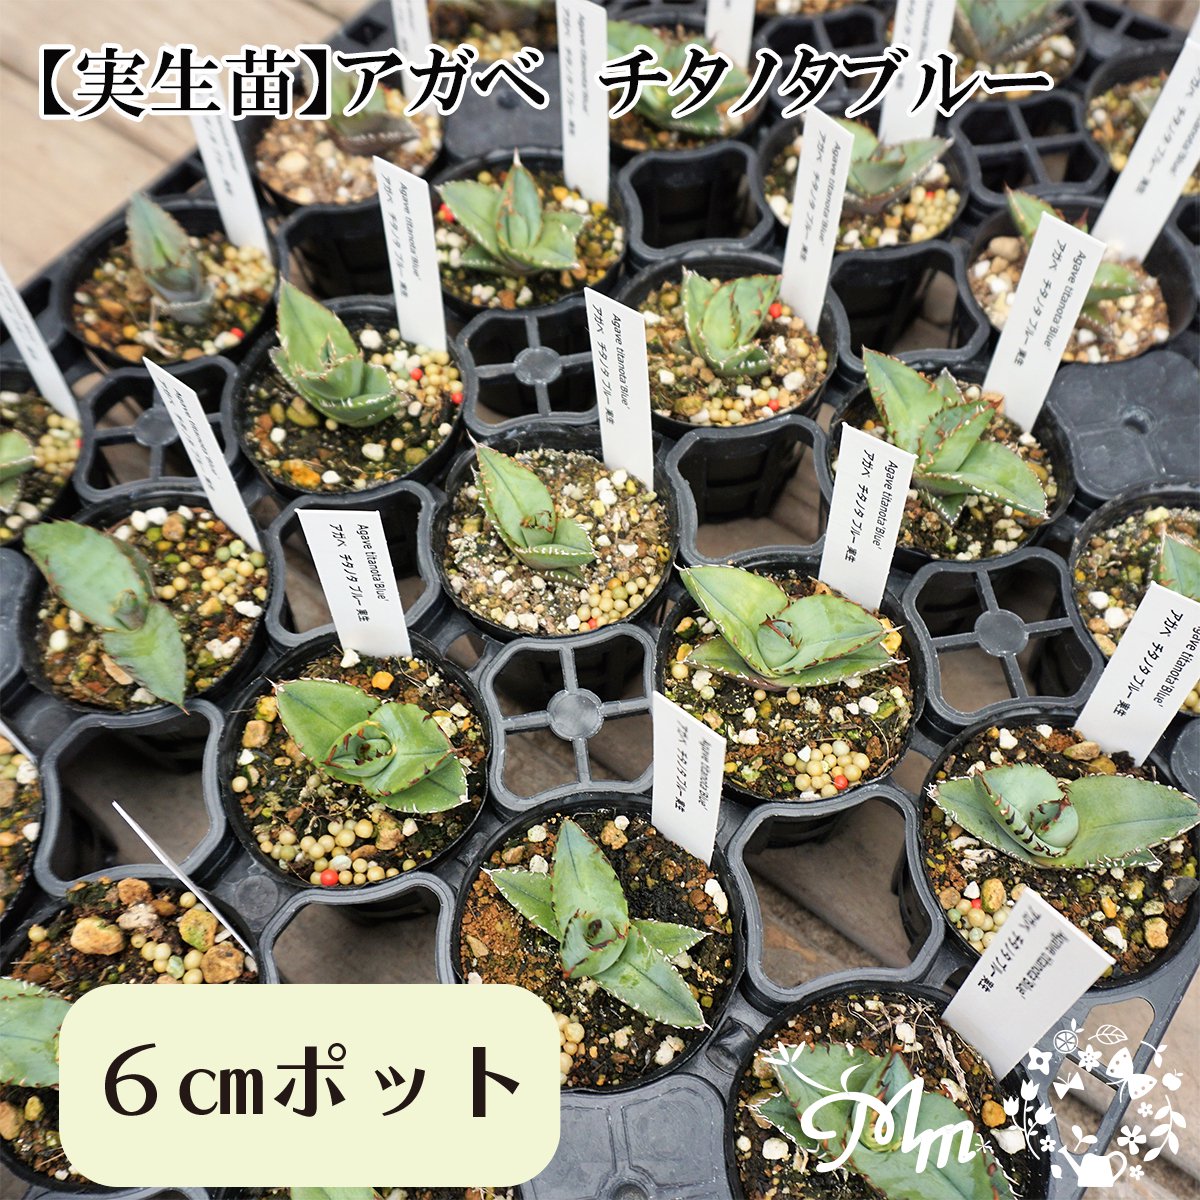 【実生苗(実生株)】Agave titanota blue(アガベ チタノタブルー)6�ポット苗